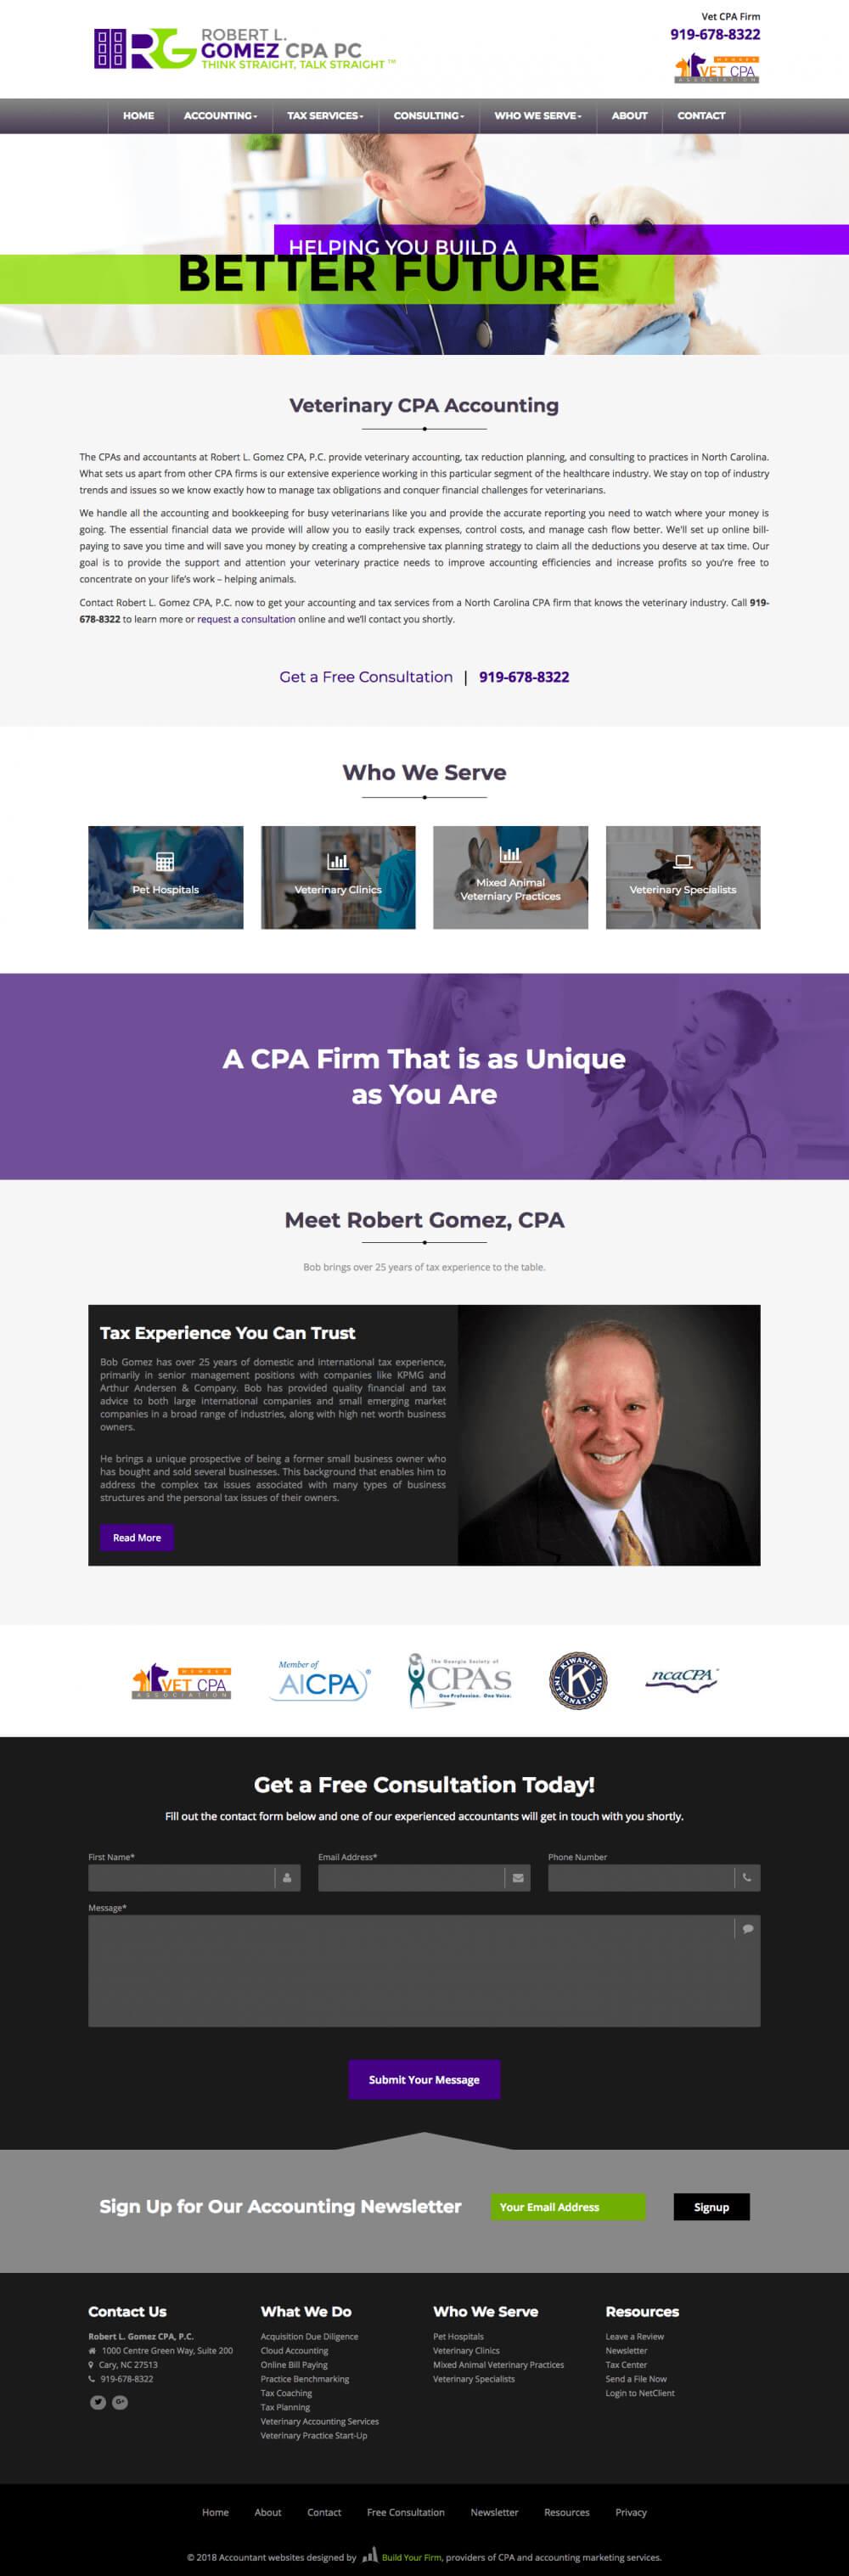 Website of Robert Gomez CPA